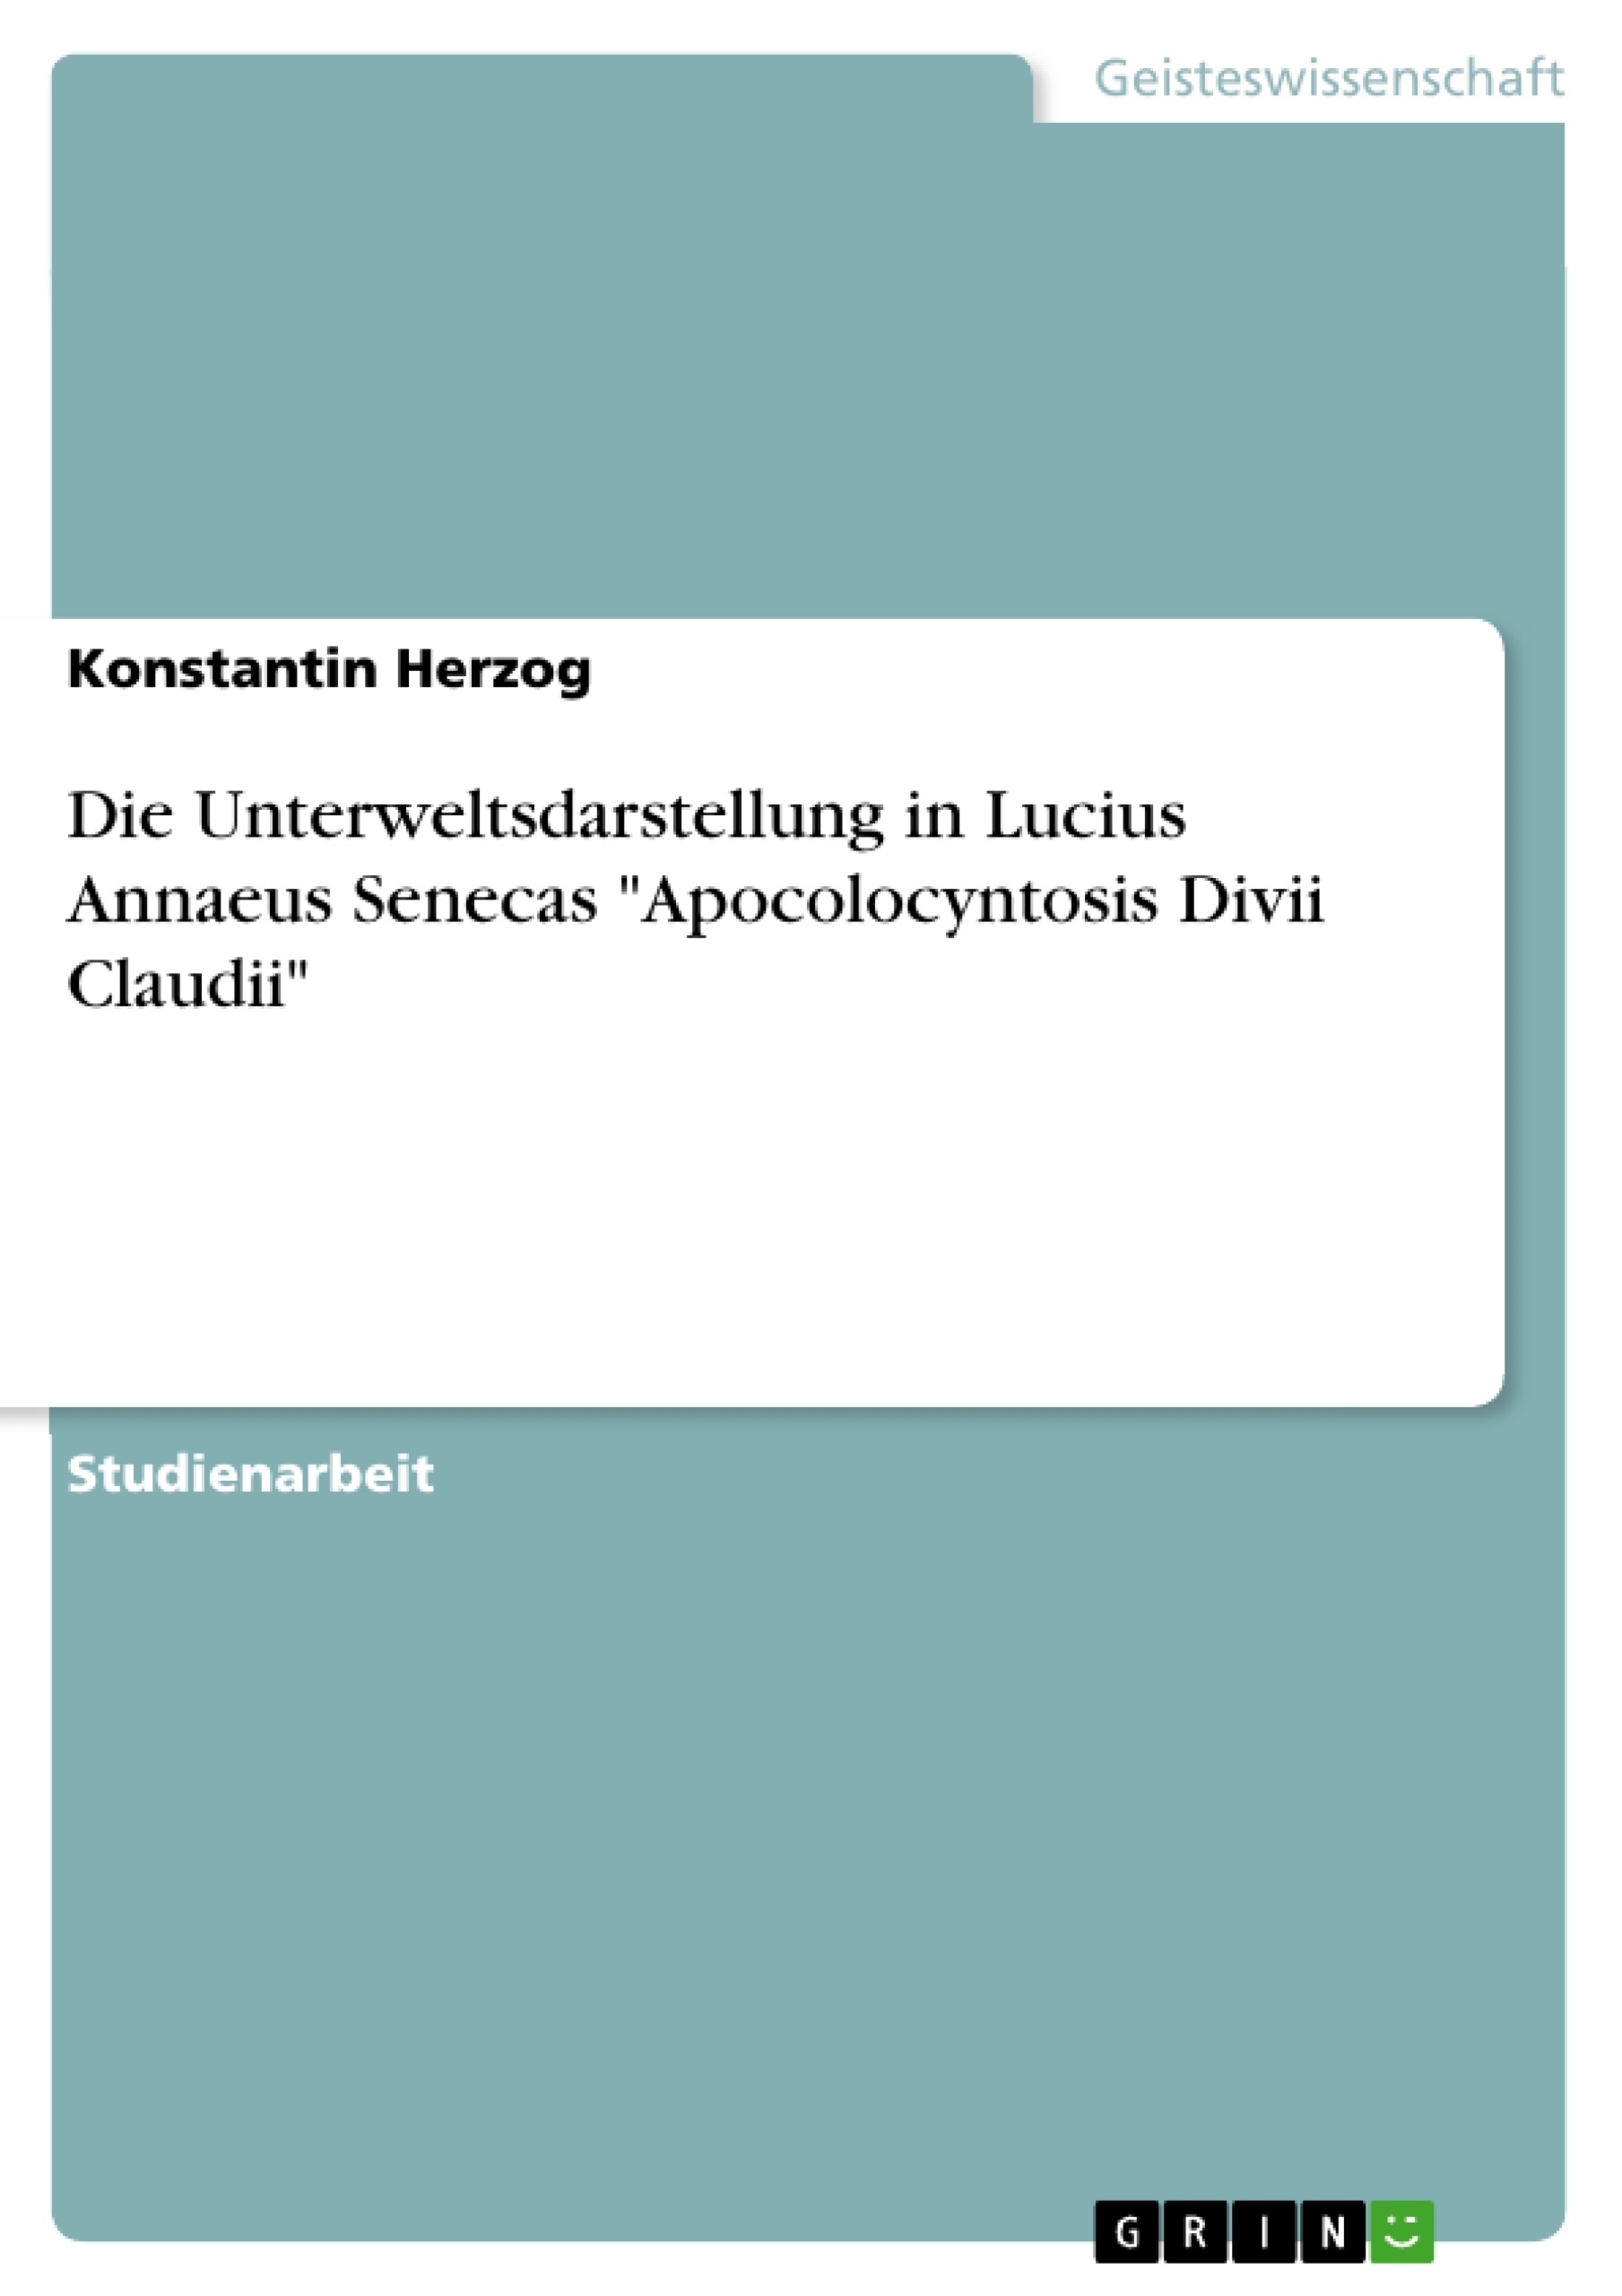 Titre: Die Unterweltsdarstellung in Lucius Annaeus Senecas "Apocolocyntosis Divii Claudii"